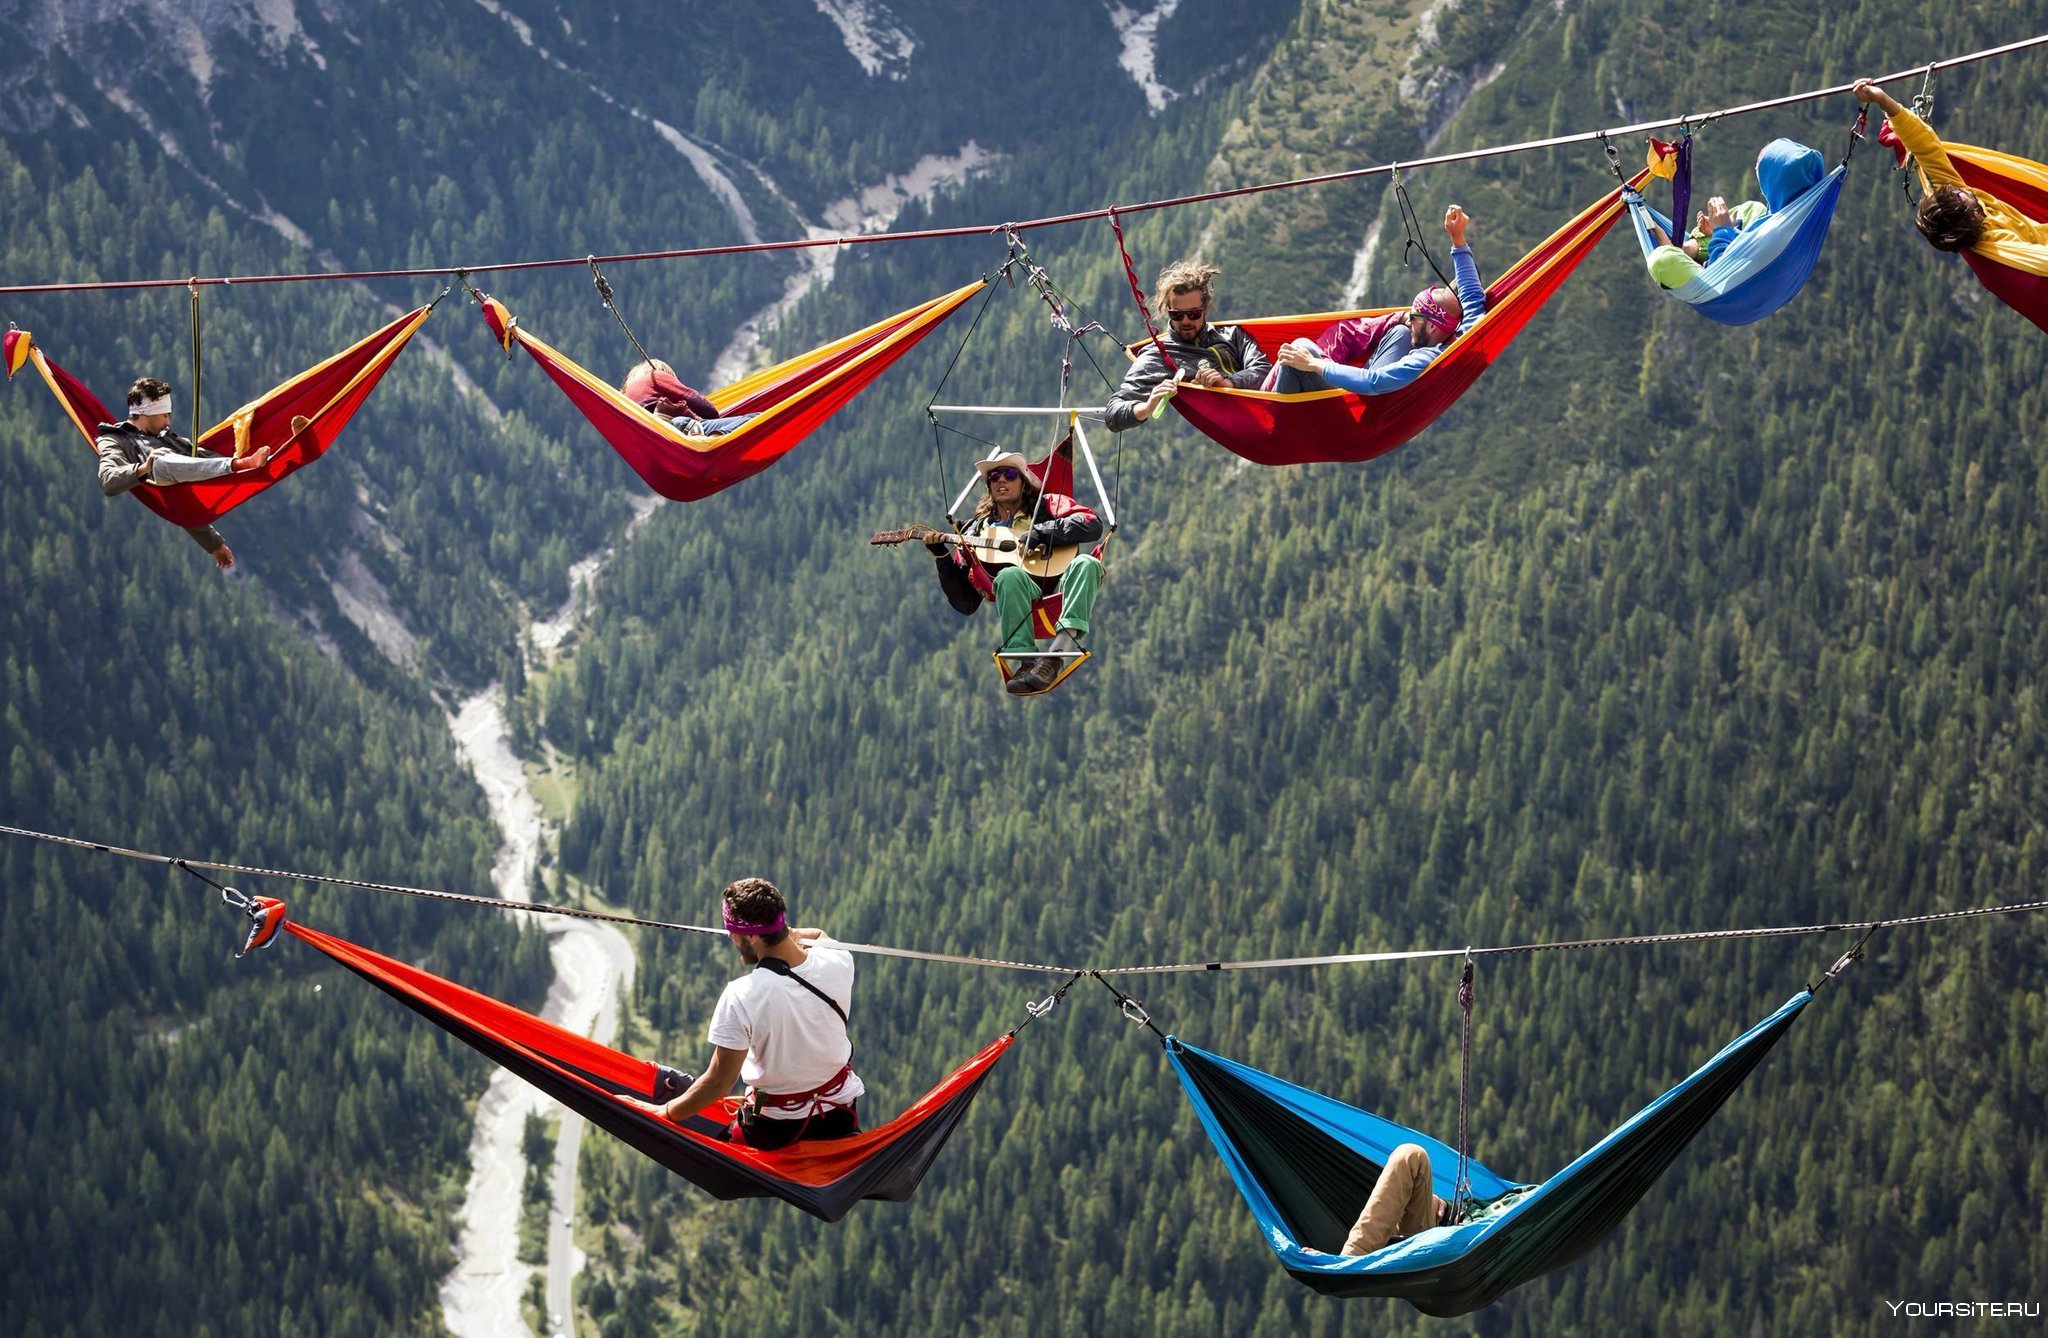 Adventure net. International Highline meeting, Монте Пиана, Италия. Фестиваль Highline meeting в Италии. Гамак в горах. Экстремальный туризм.